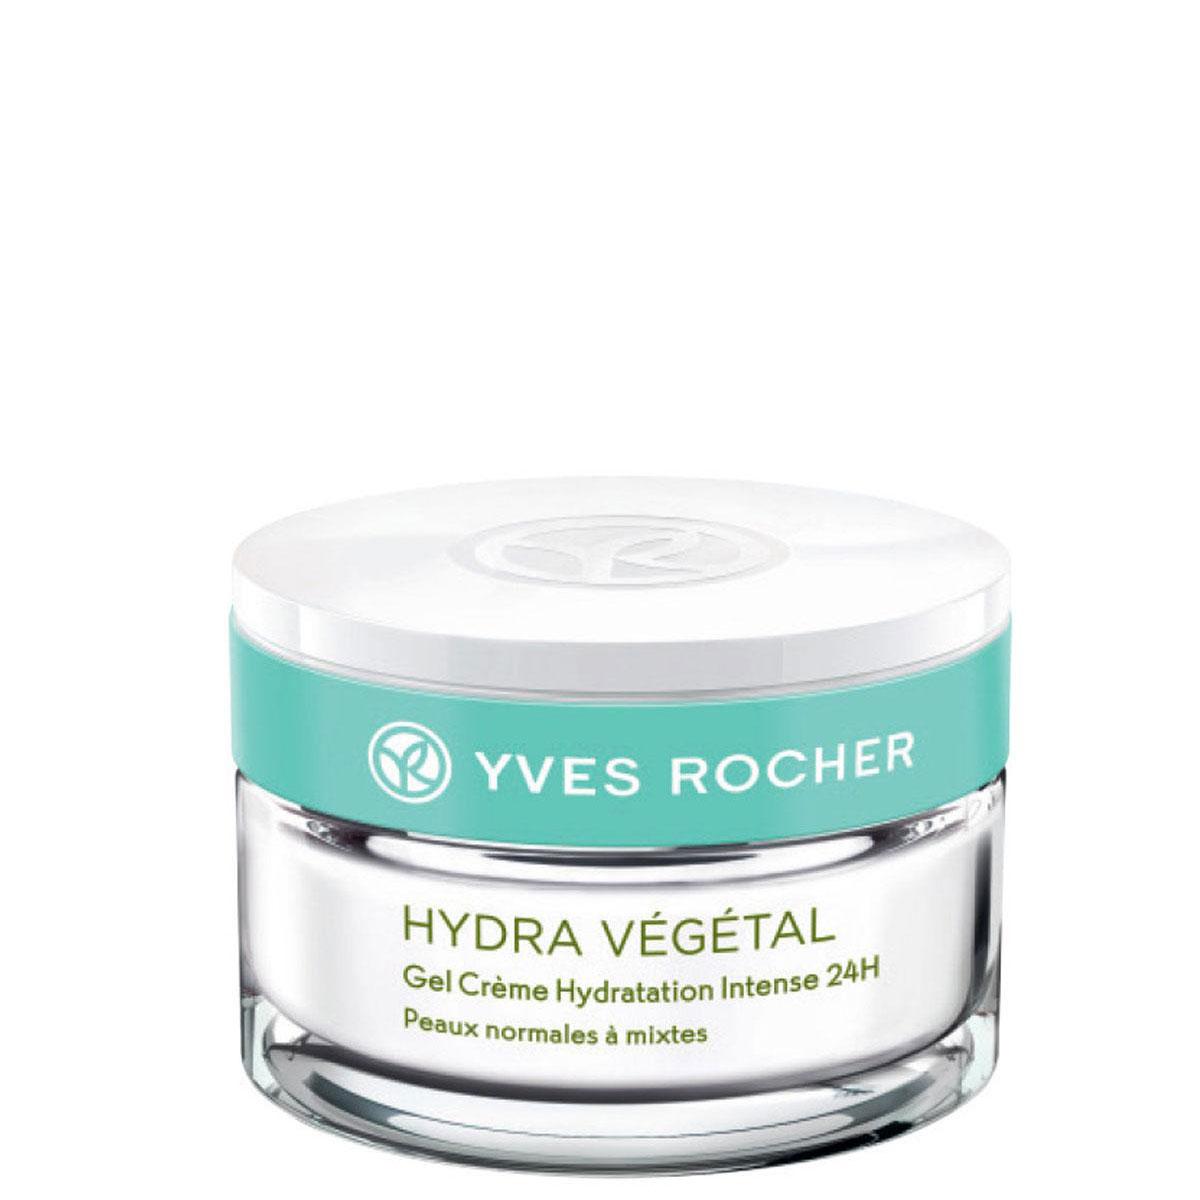 ژل کرمی مرطوب کننده هیدرا وژتال - Hydra Vegetal Intense Hydrating Gel Cream